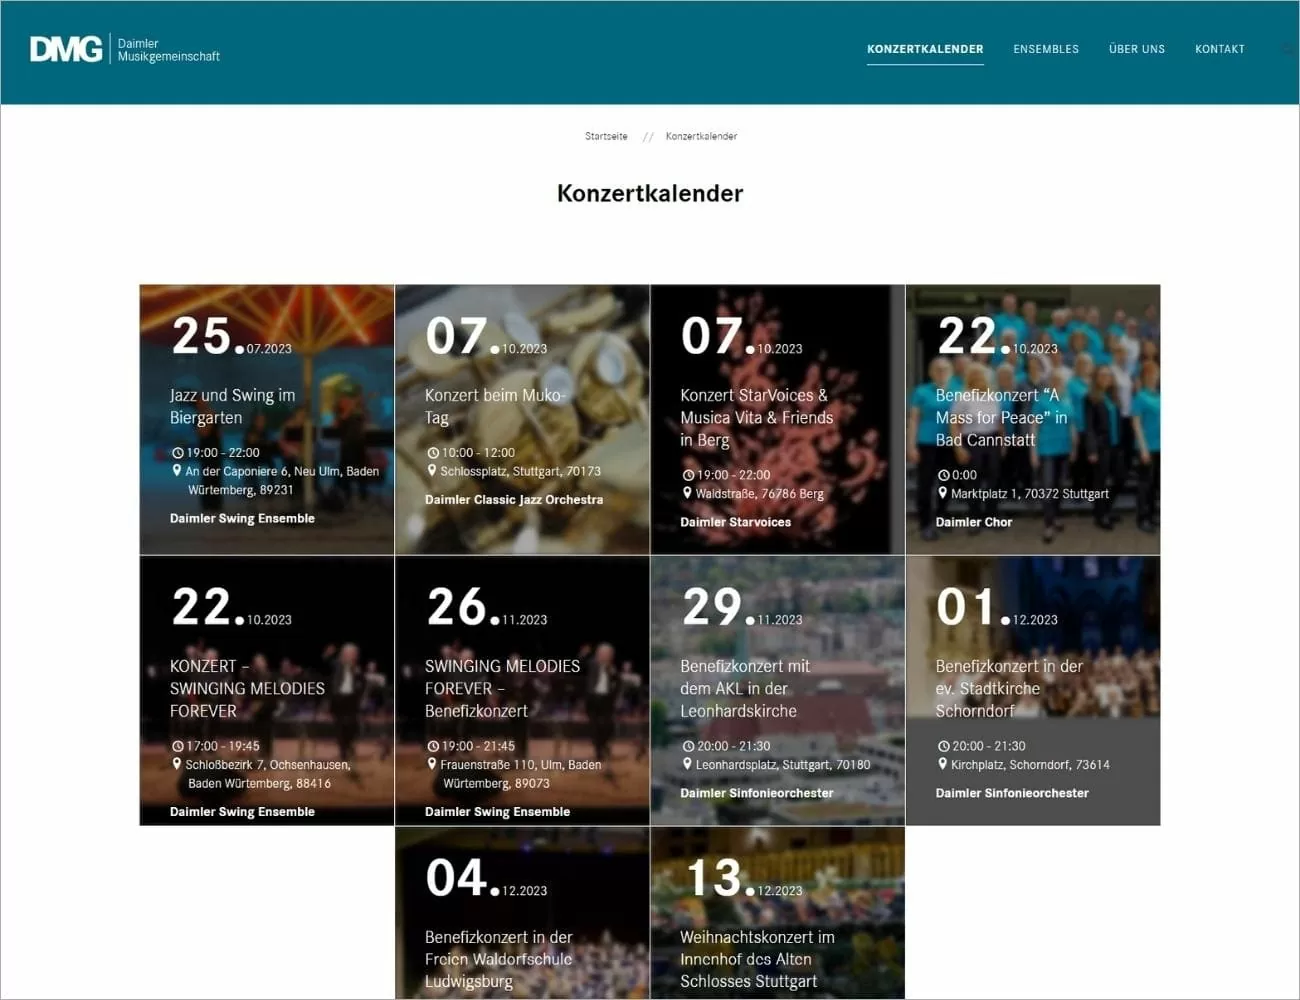 Ein Highlight auf der Webseite: Der Konzertkalender der Daimler Musikgesellschaft (DMG) mit Auftritten der verschiedenen Ensembles. Die Termine reichen vom 07.10.2023 mit zwei Auftritten der Gruppen 